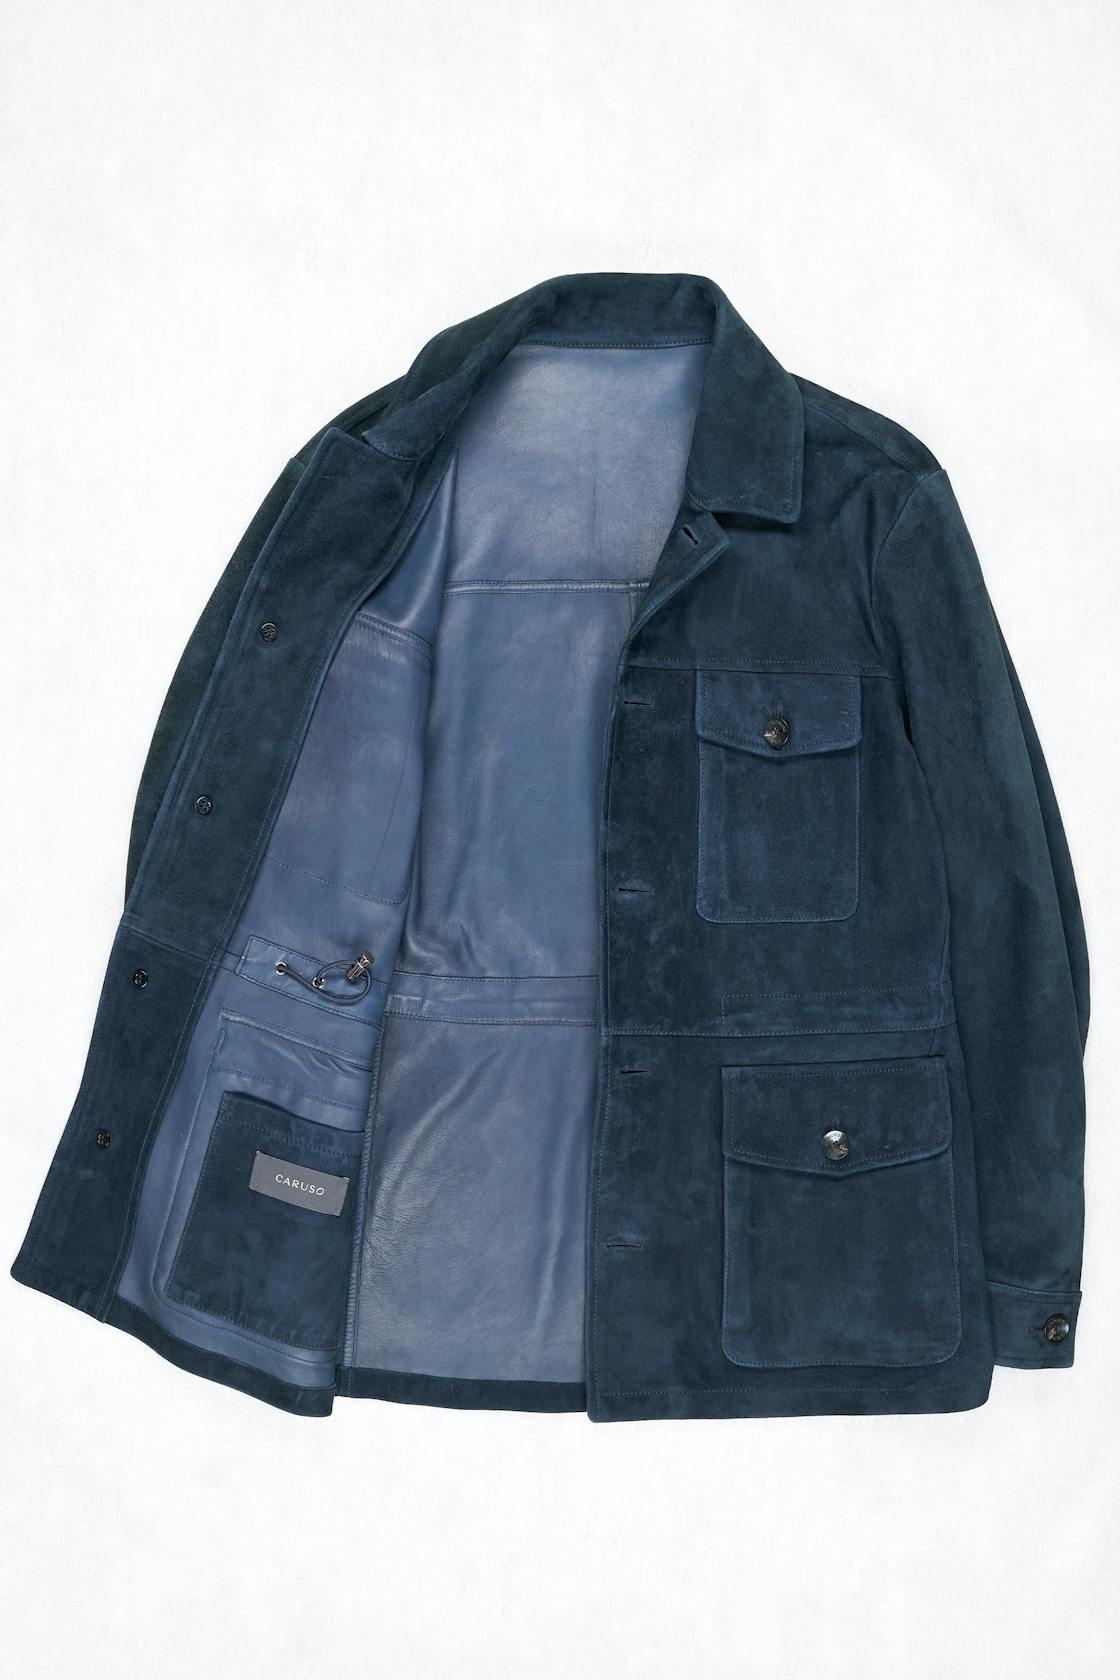 Caruso Dark Blue Suede Safari Jacket